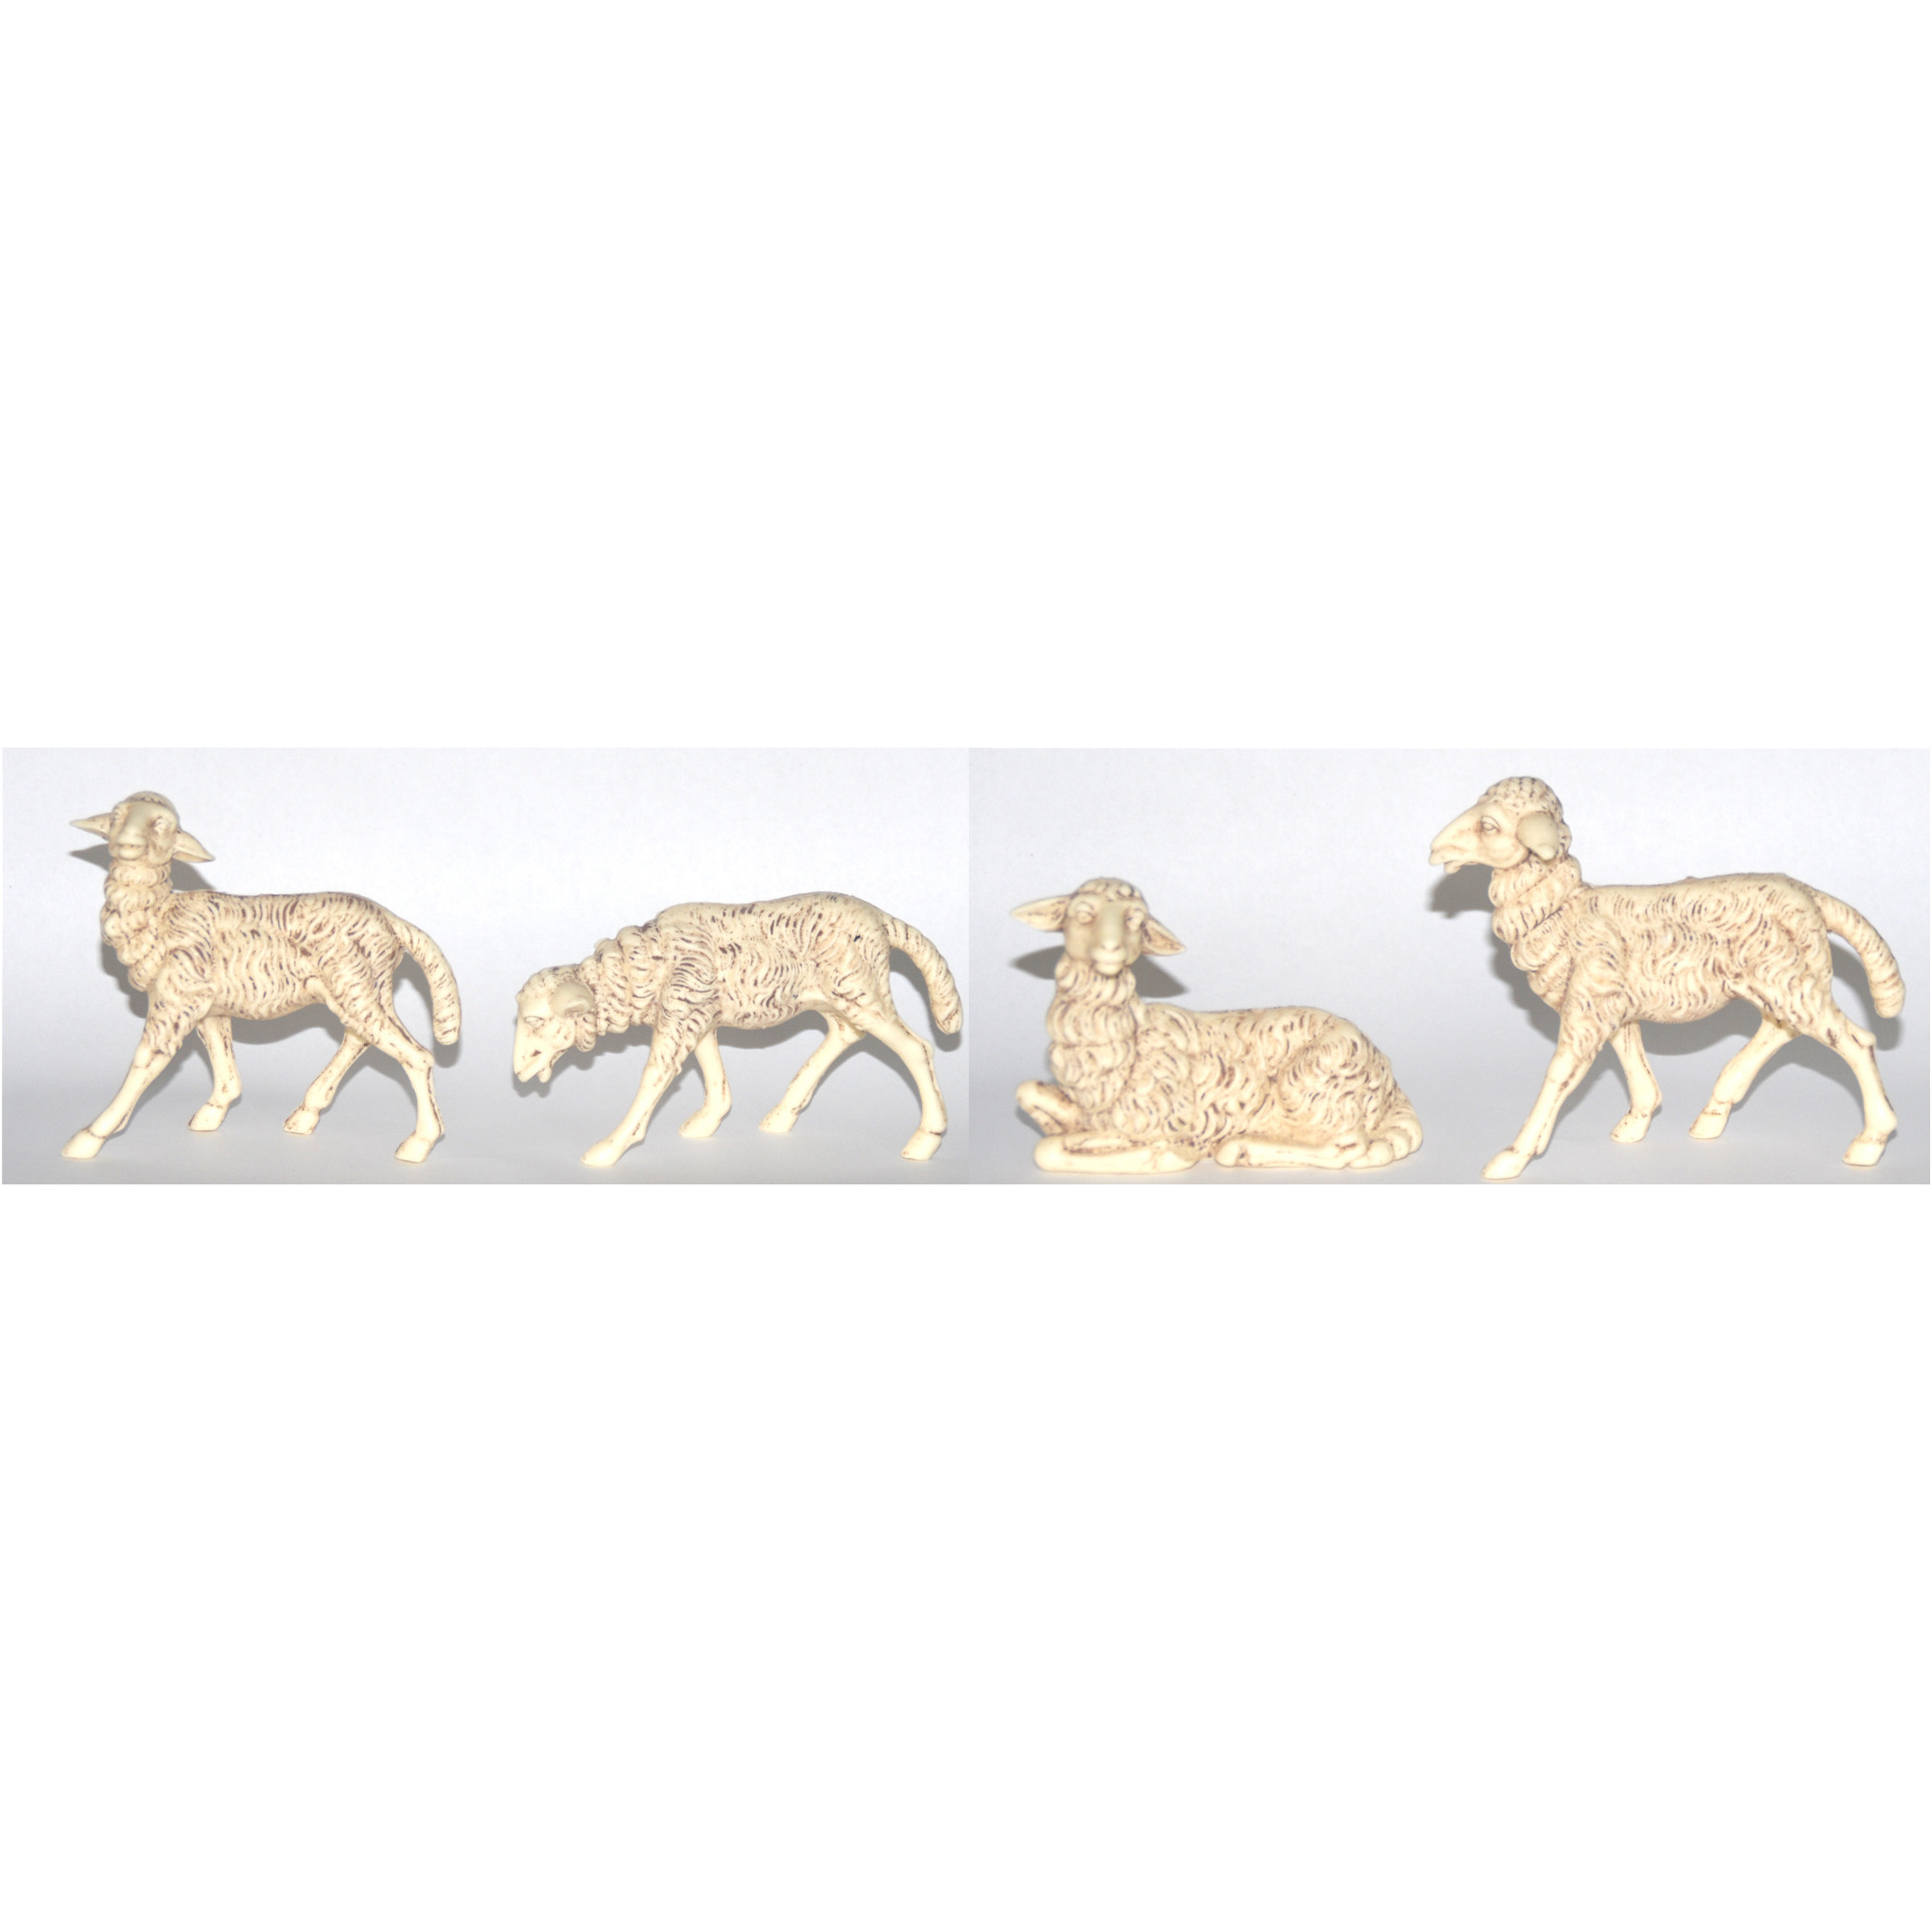 4x Witte schapen beeldjes 10 x 10 cm dierenbeeldjes